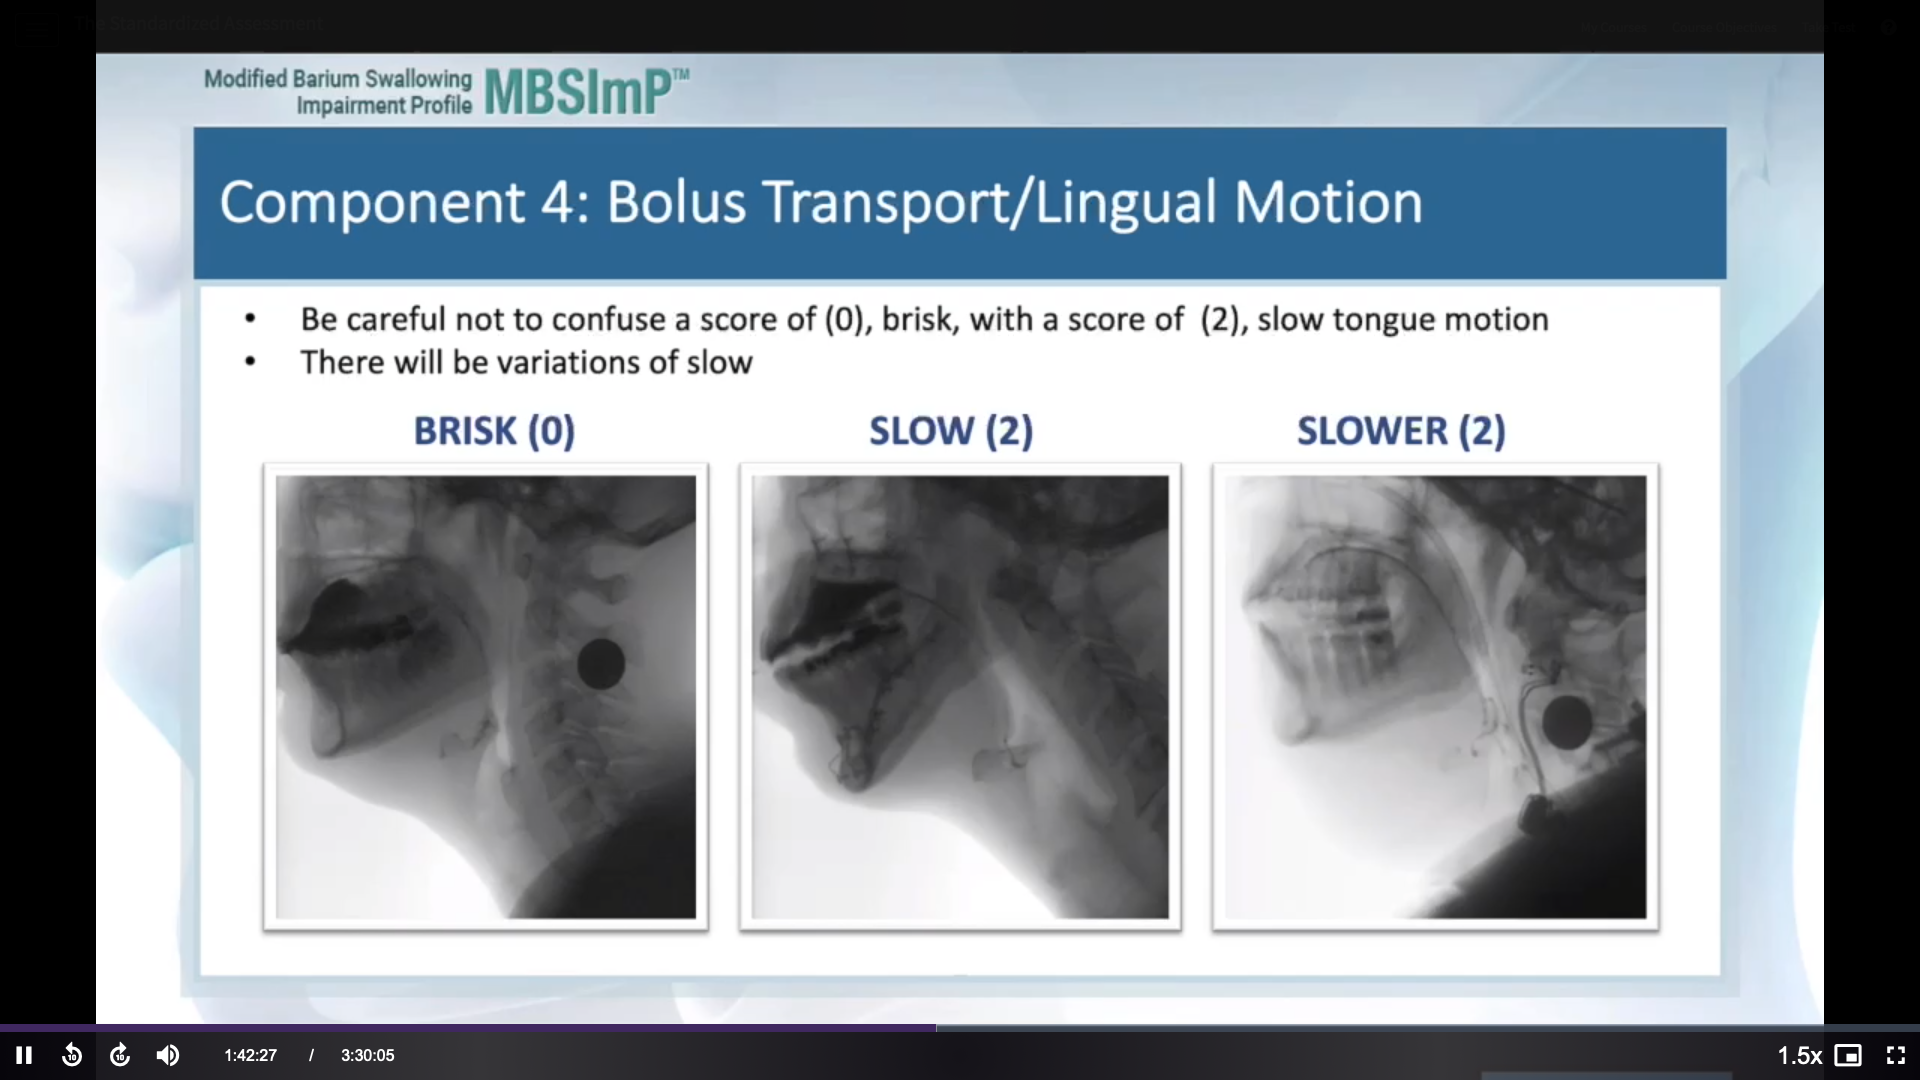 MBSImP Renewal - Component 4 - Bolus Transport